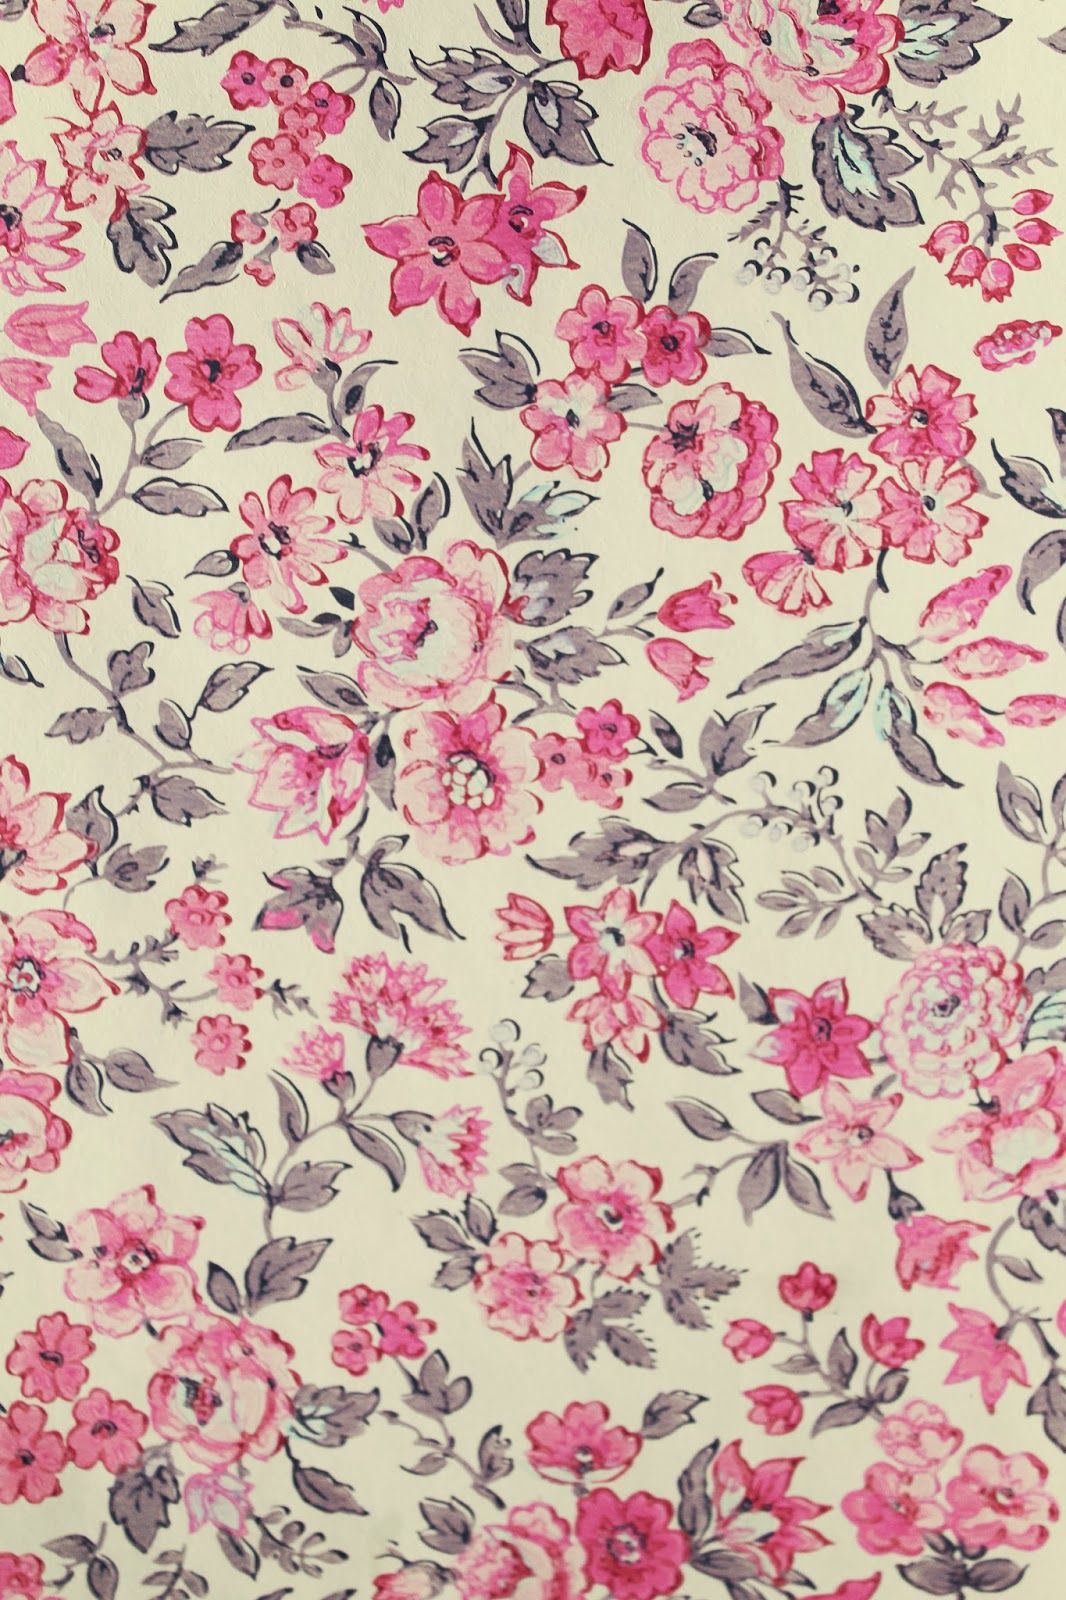 wallpaper tumblr vintage,pink,pattern,textile,floral design,botany